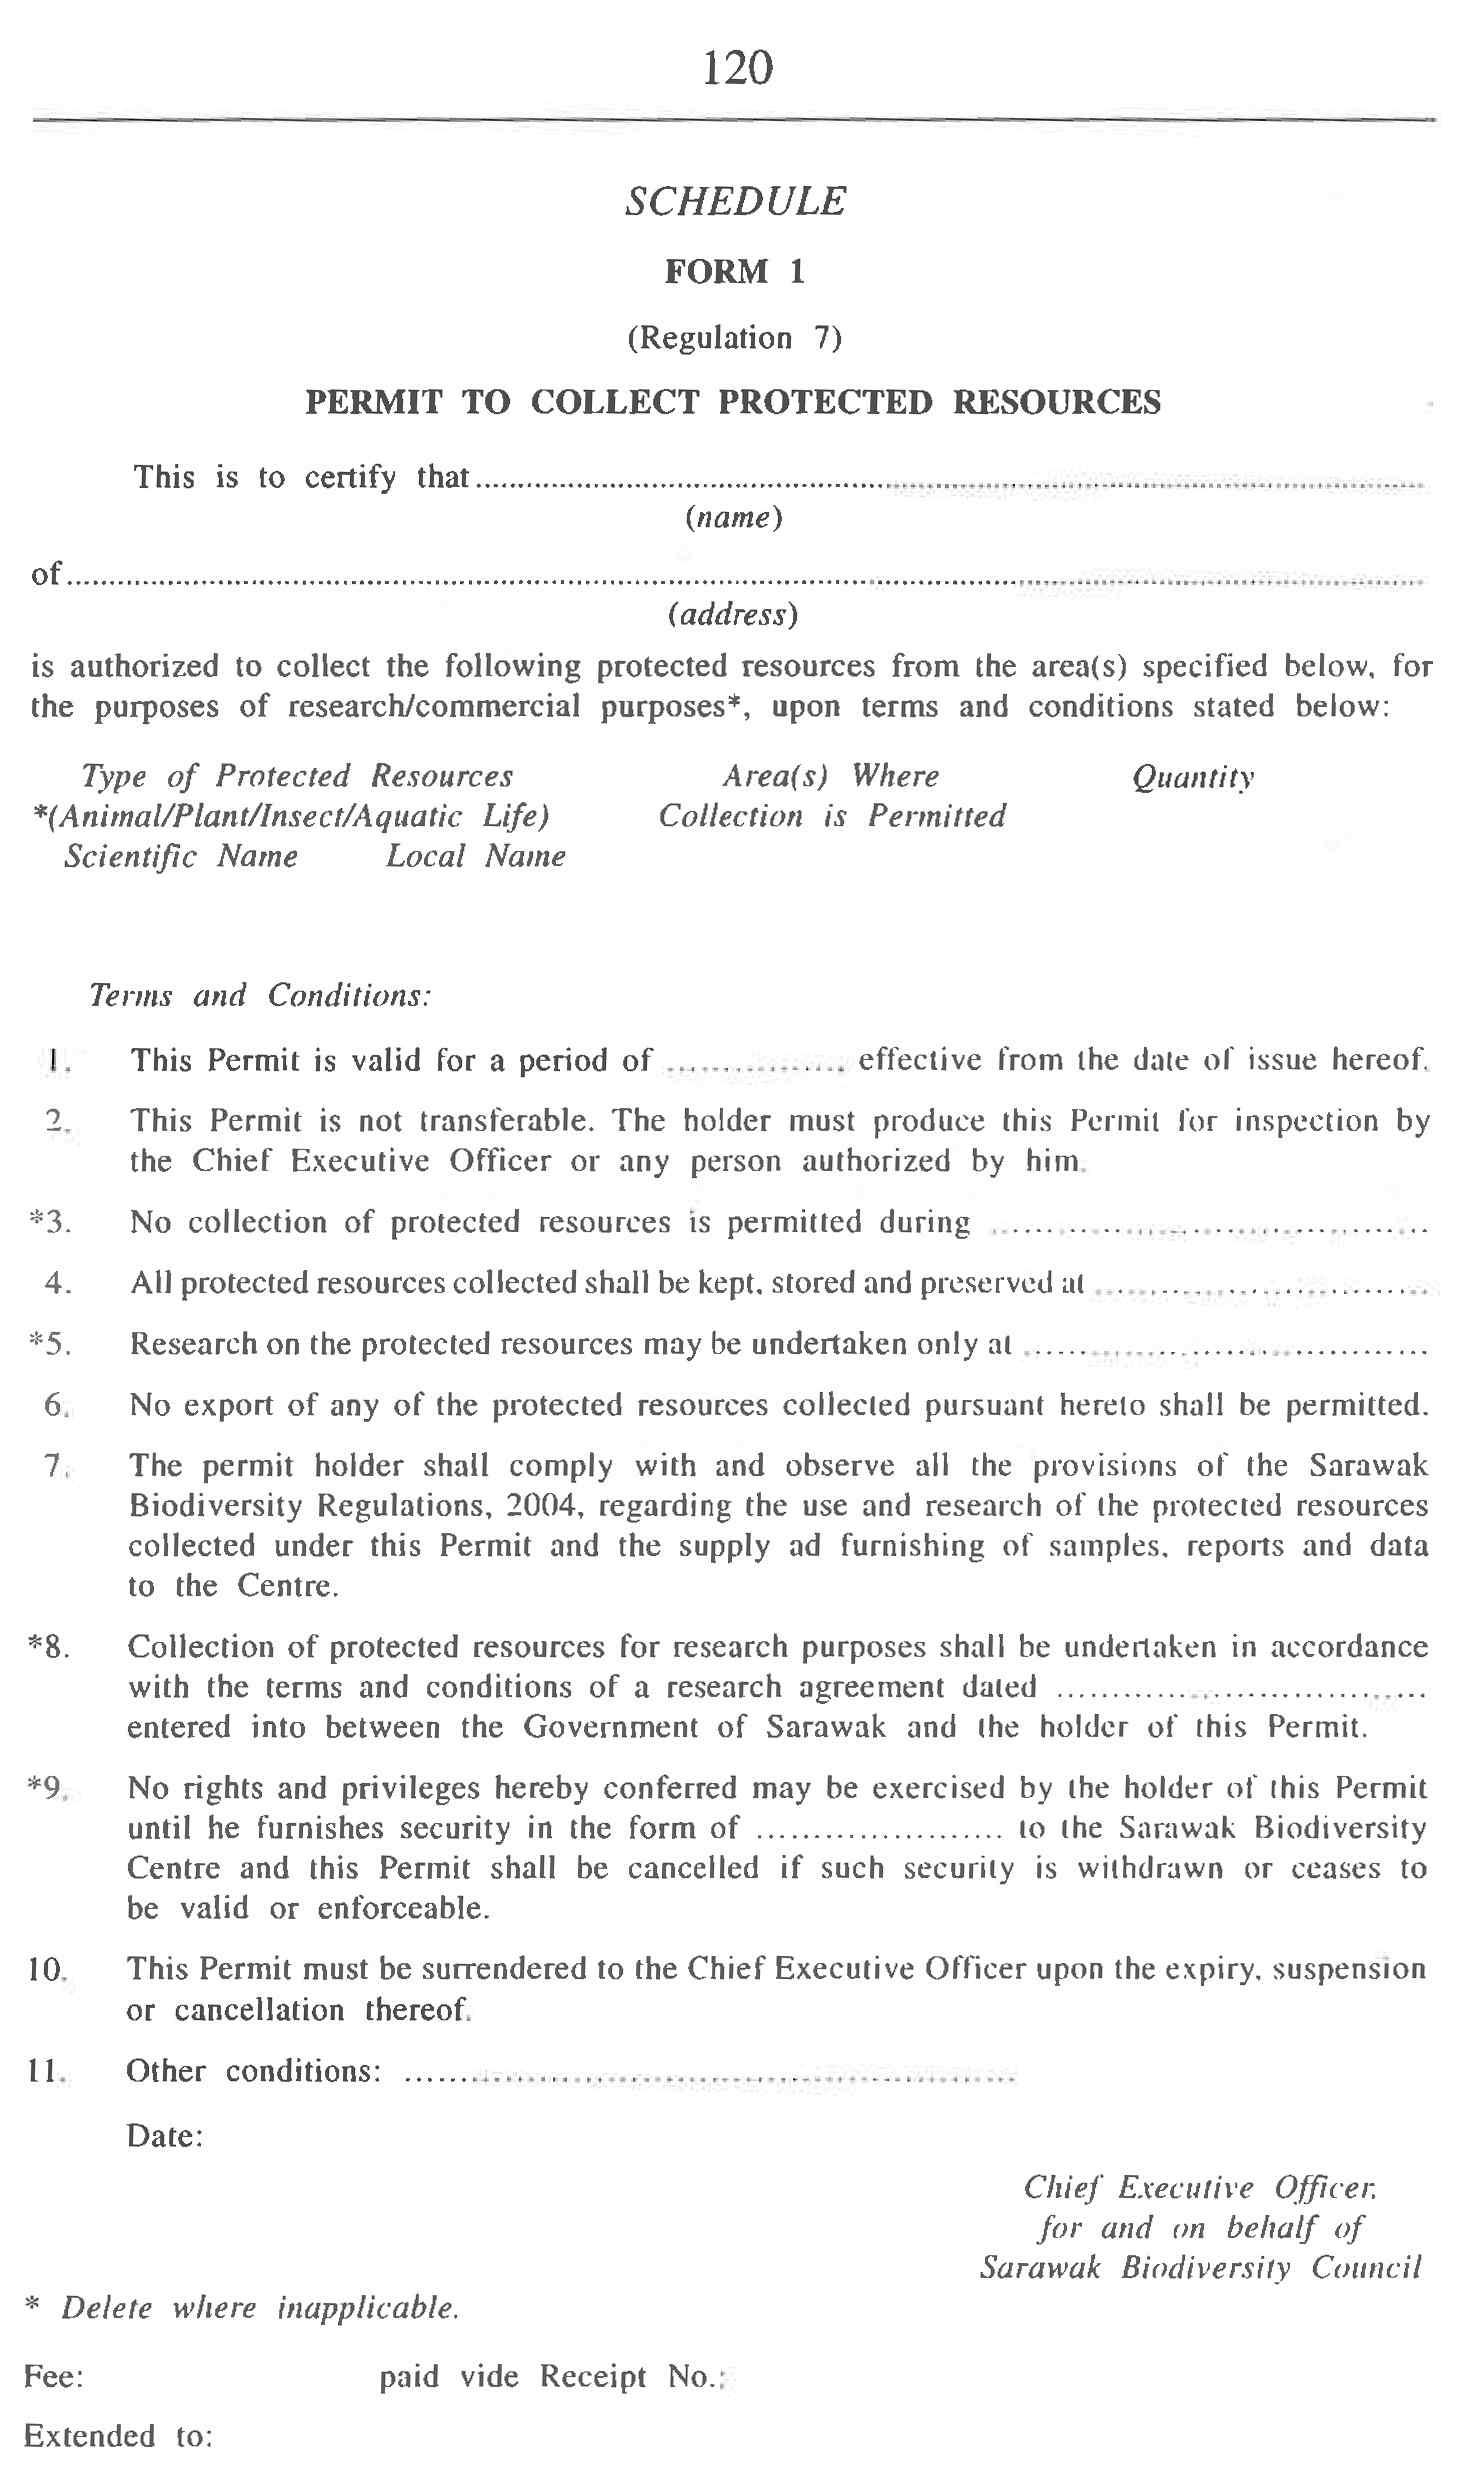 말레이시아 사라왁주 생물자원 수집 등의 관한 허가증 (Form 1)